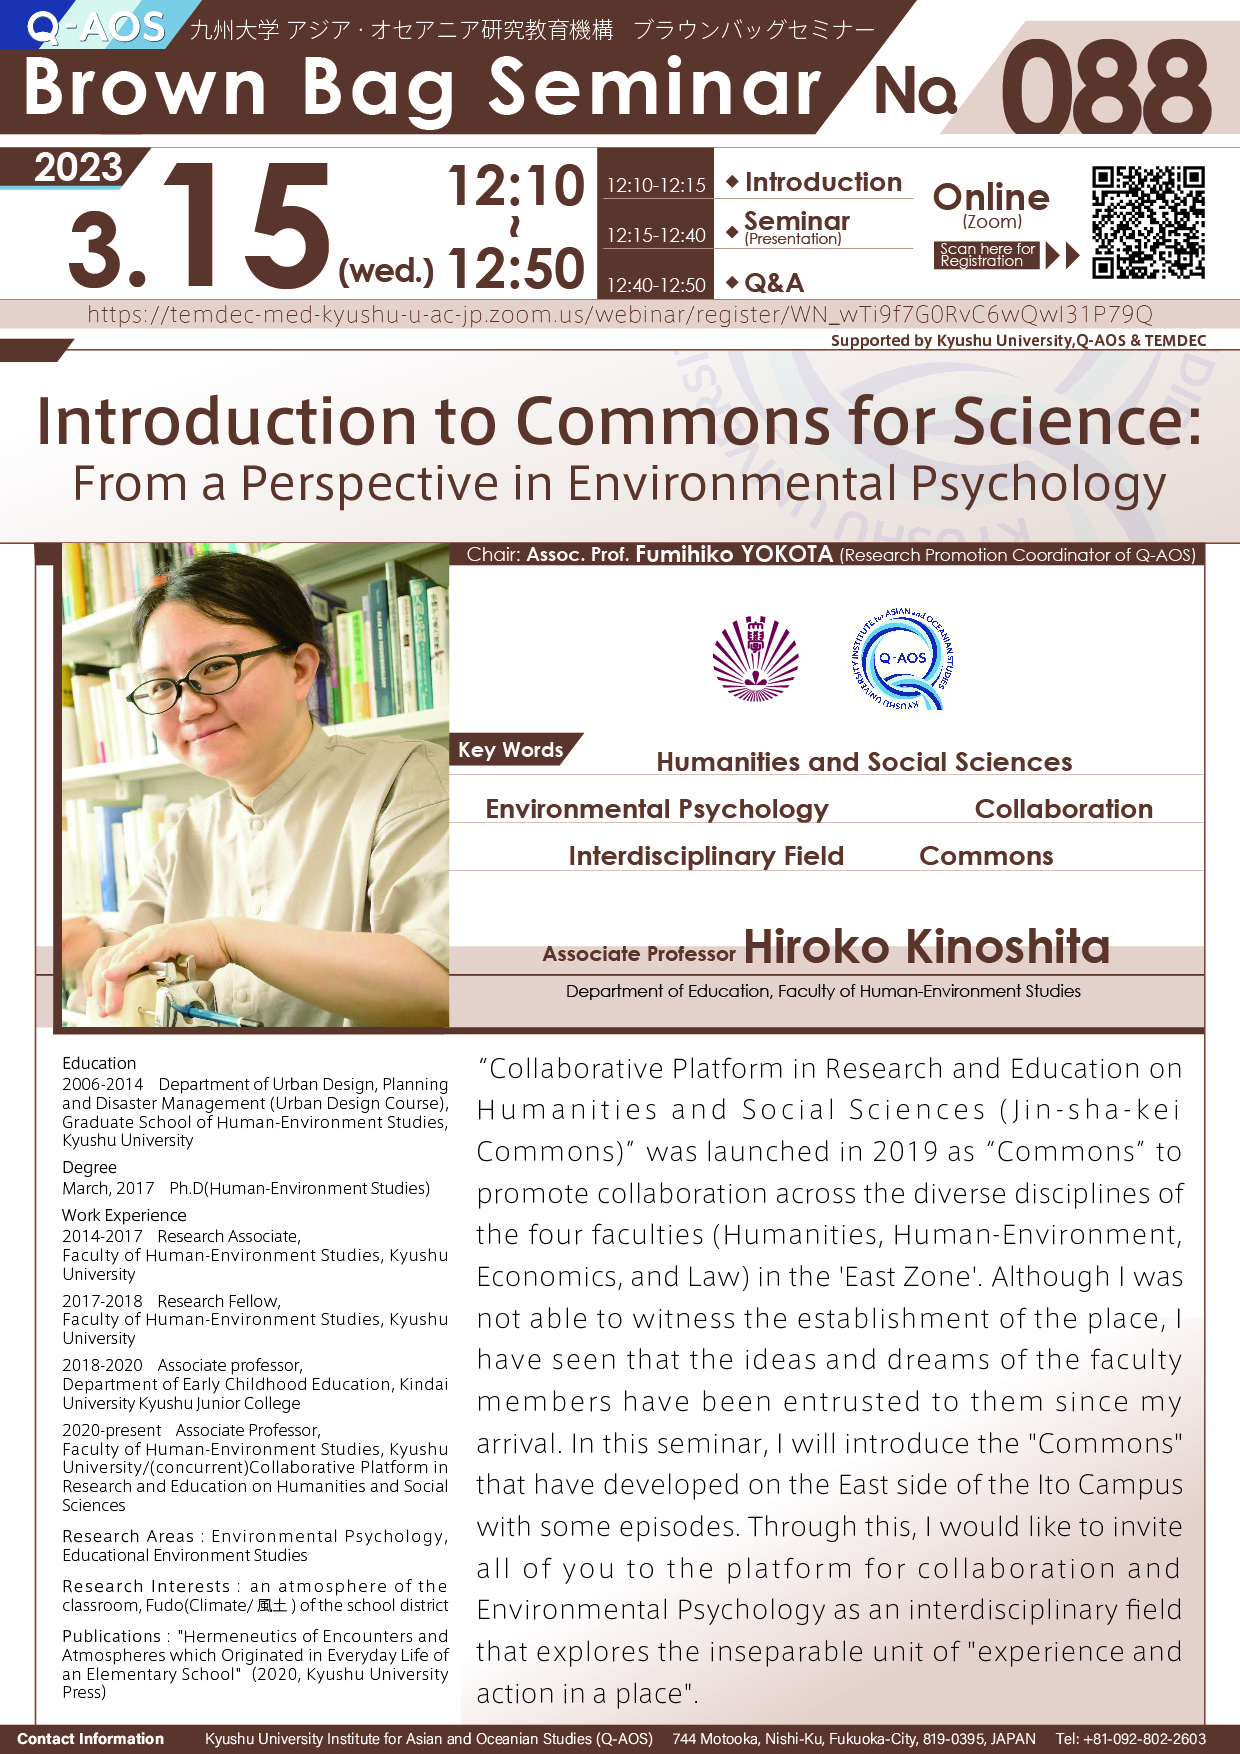 アイキャッチ画像：Q-AOS Brown Bag Seminar Series The 88th Seminar “Introduction to Commons for Science: From a Perspective in Environmental Psychology”